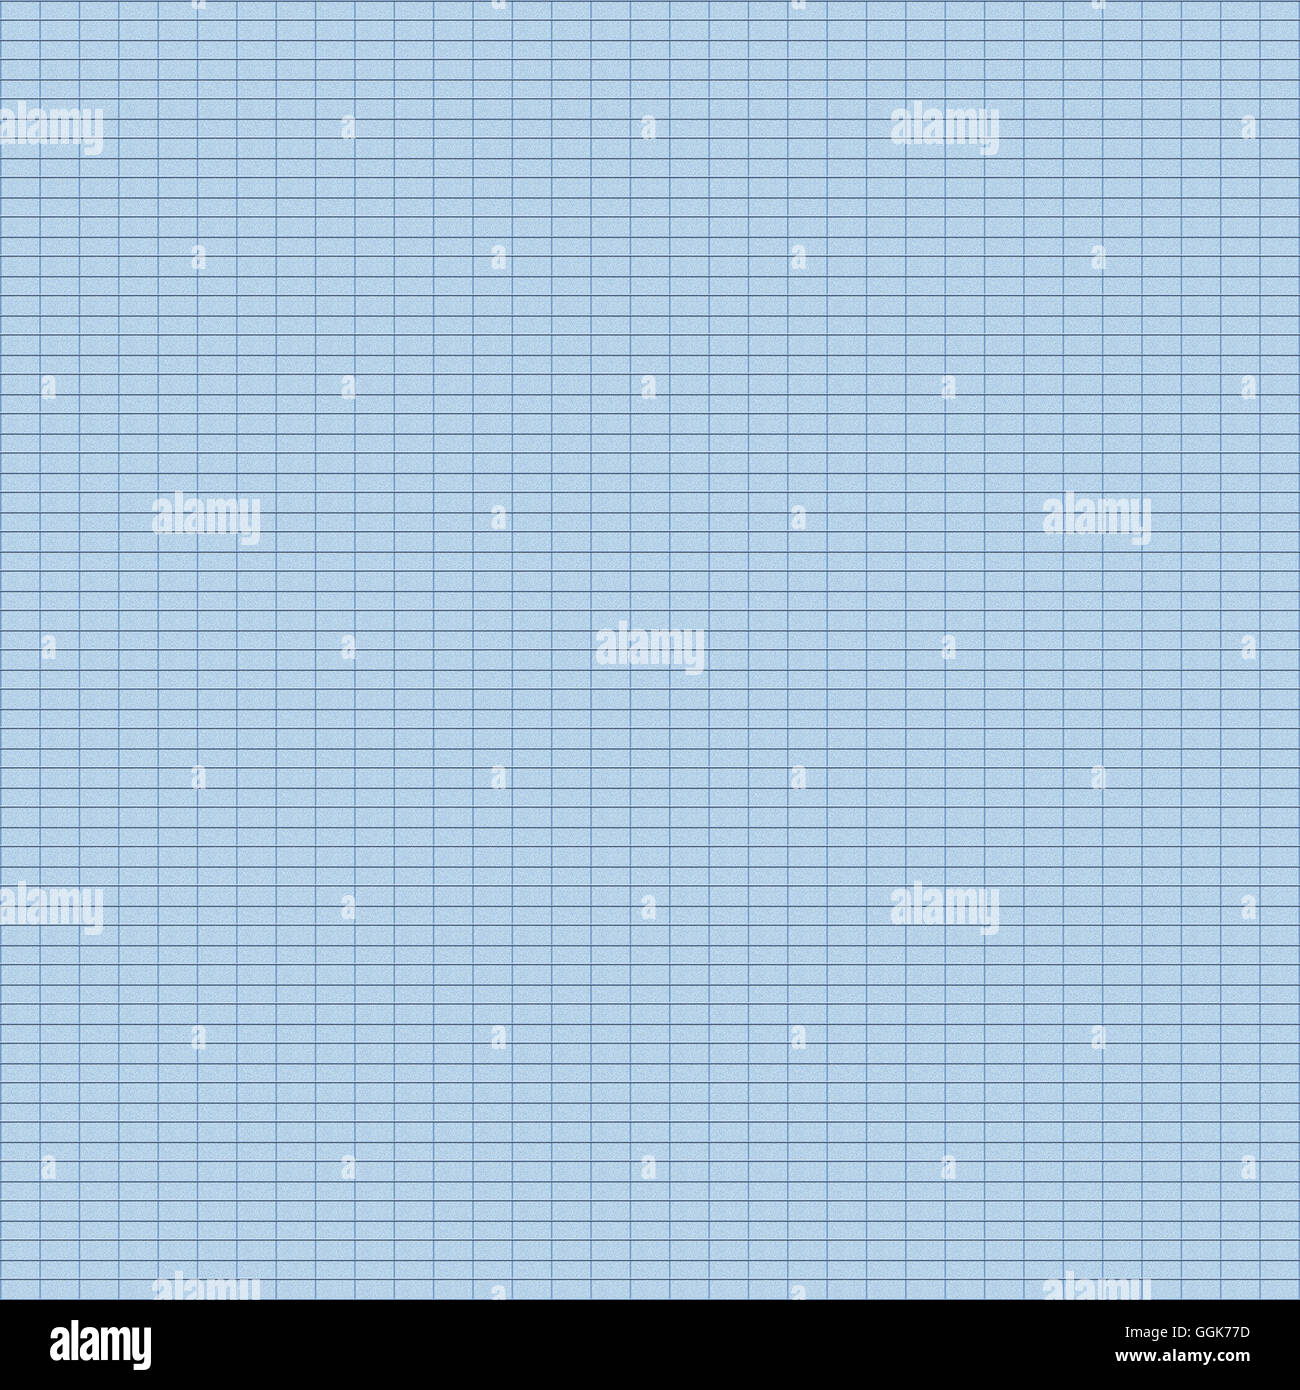 Tabellenmuster mit blauer Farbe, Digital erstellt für die Verwendung als Web-Hintergrund Stockfoto